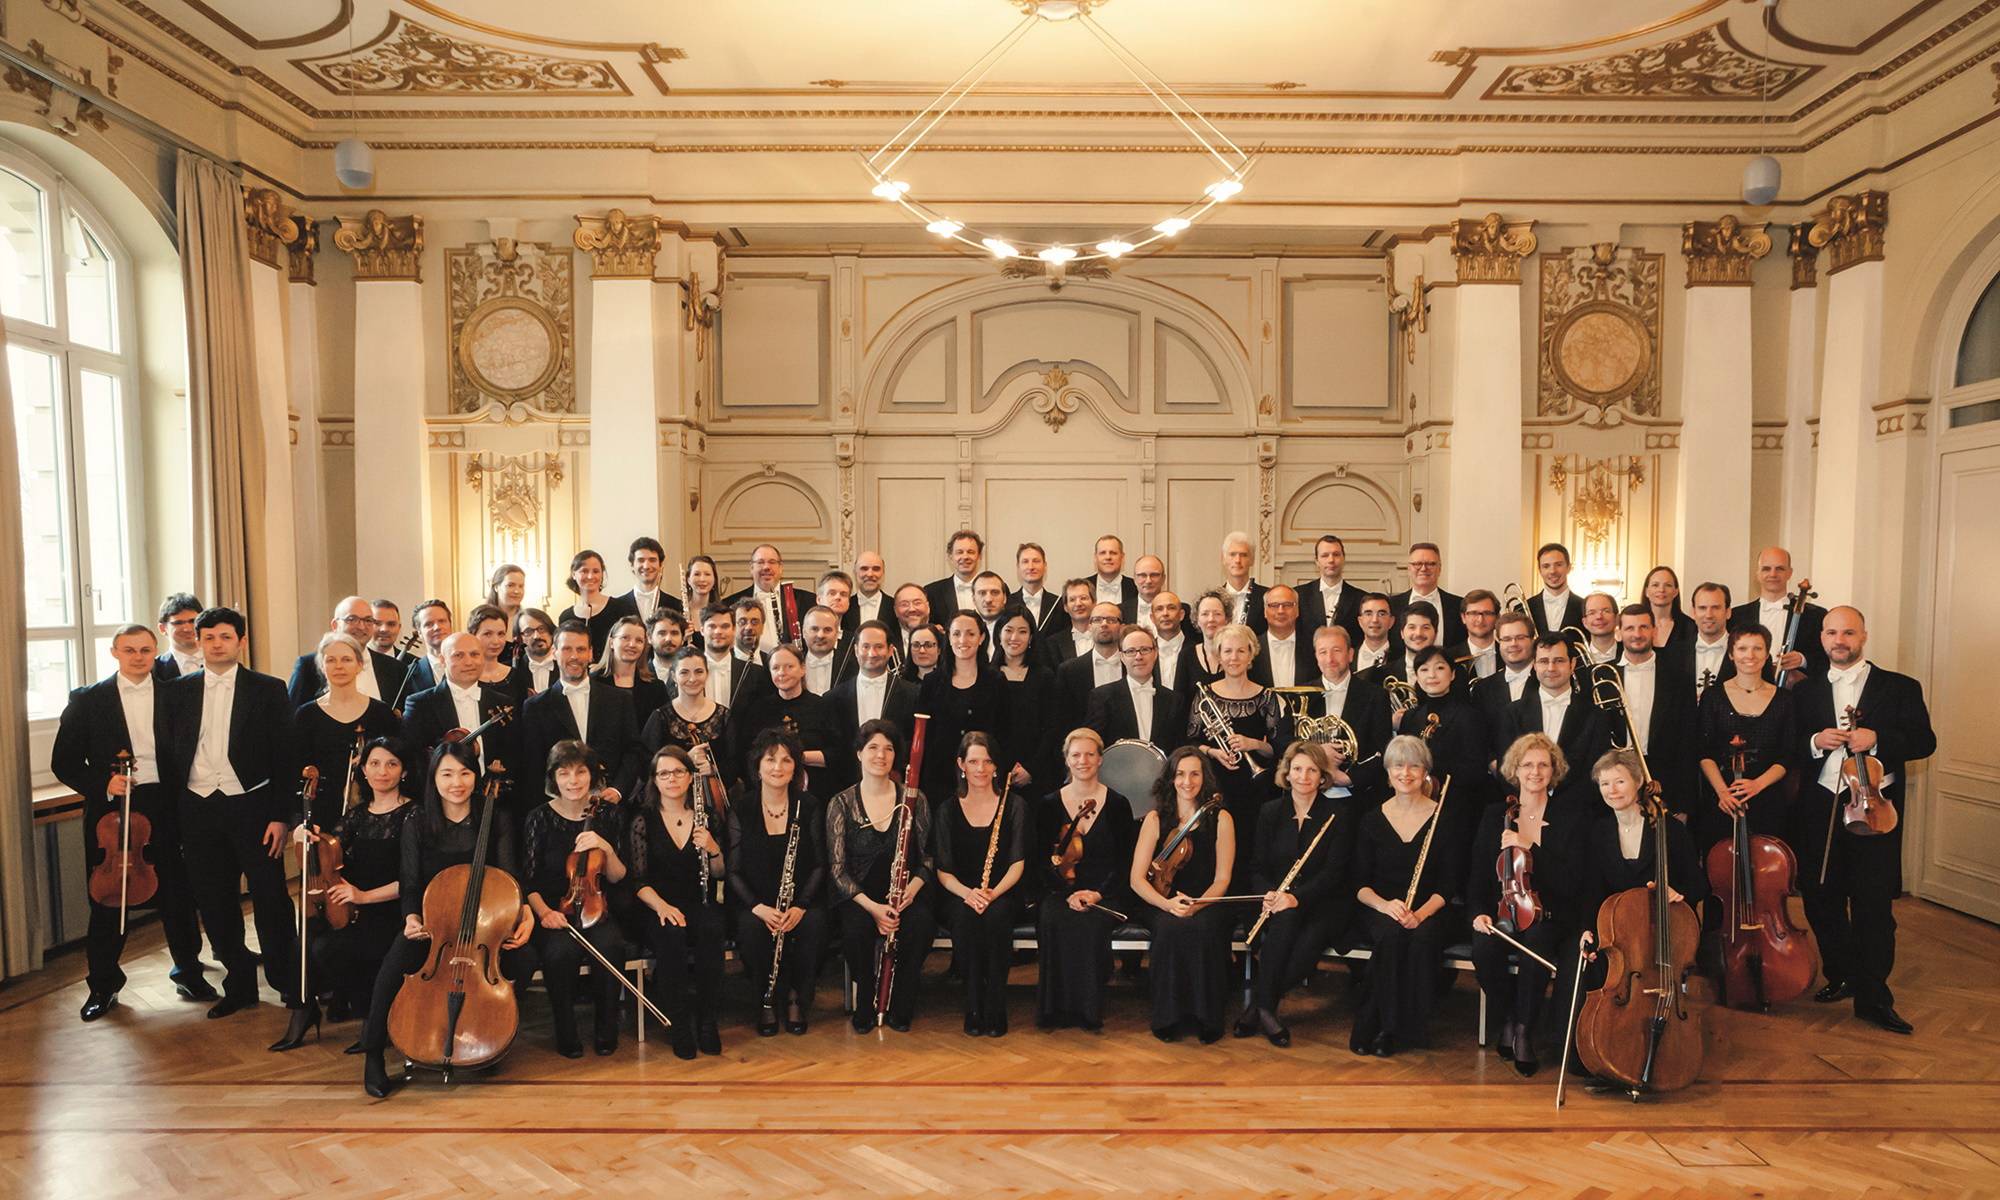  Das Sinfonieorchester Wuppertal freut sich auf das Mitsingkonzert.  